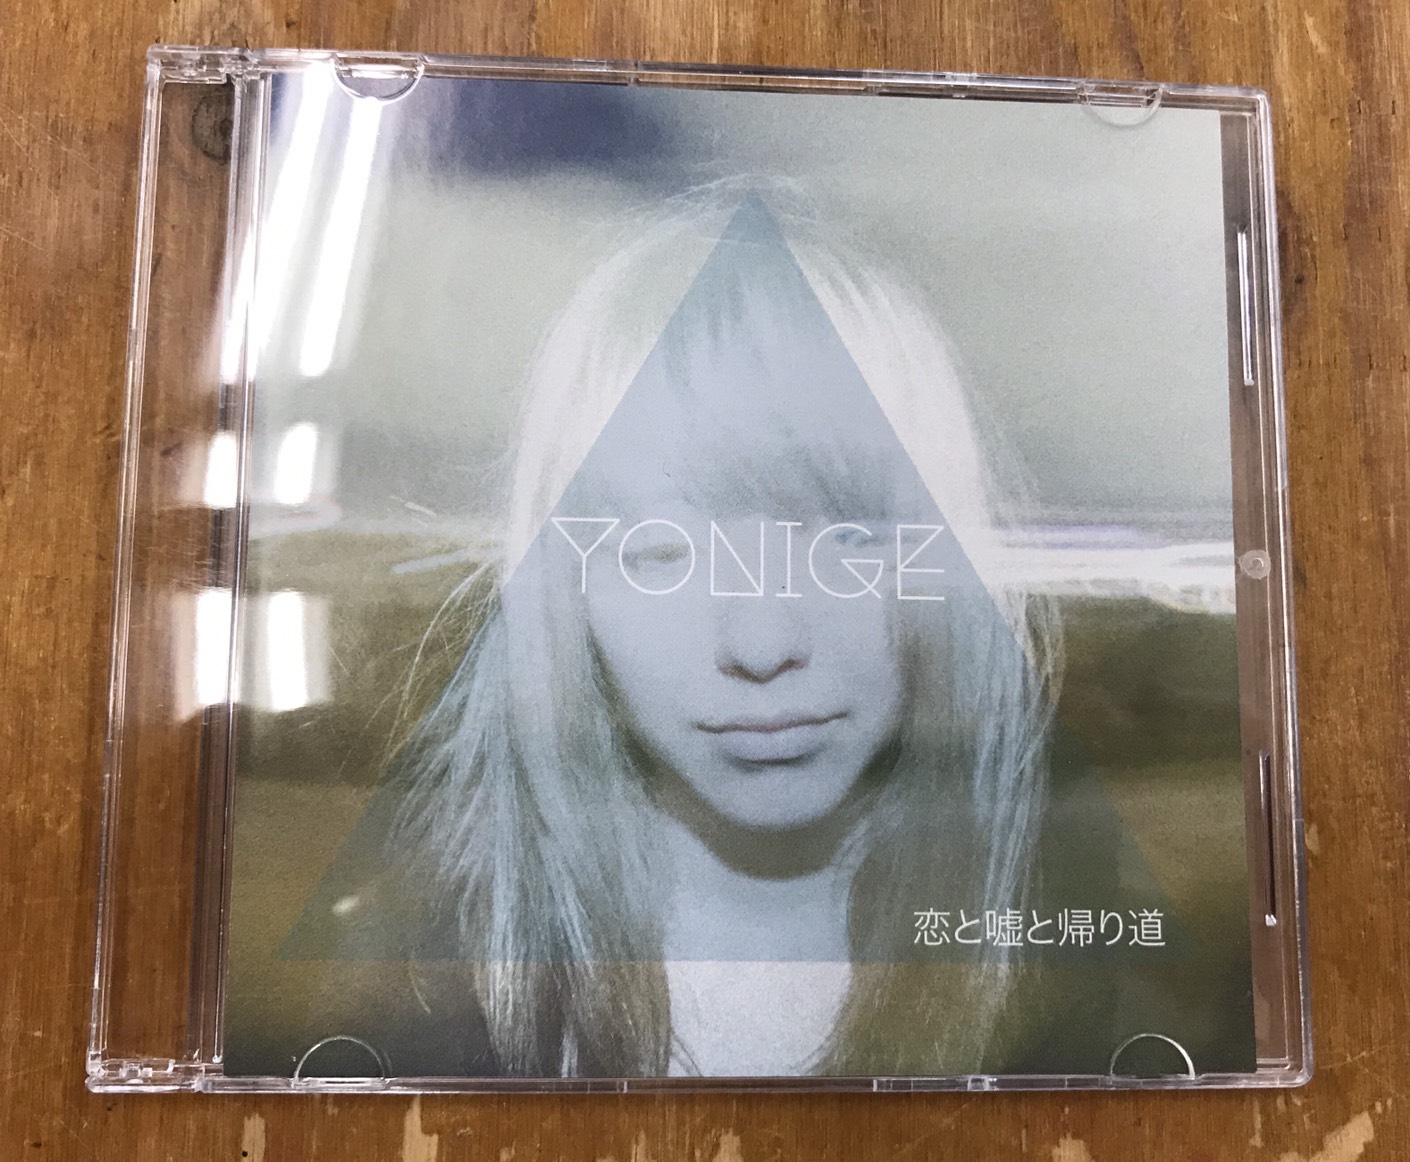 yonige demo CD - CD